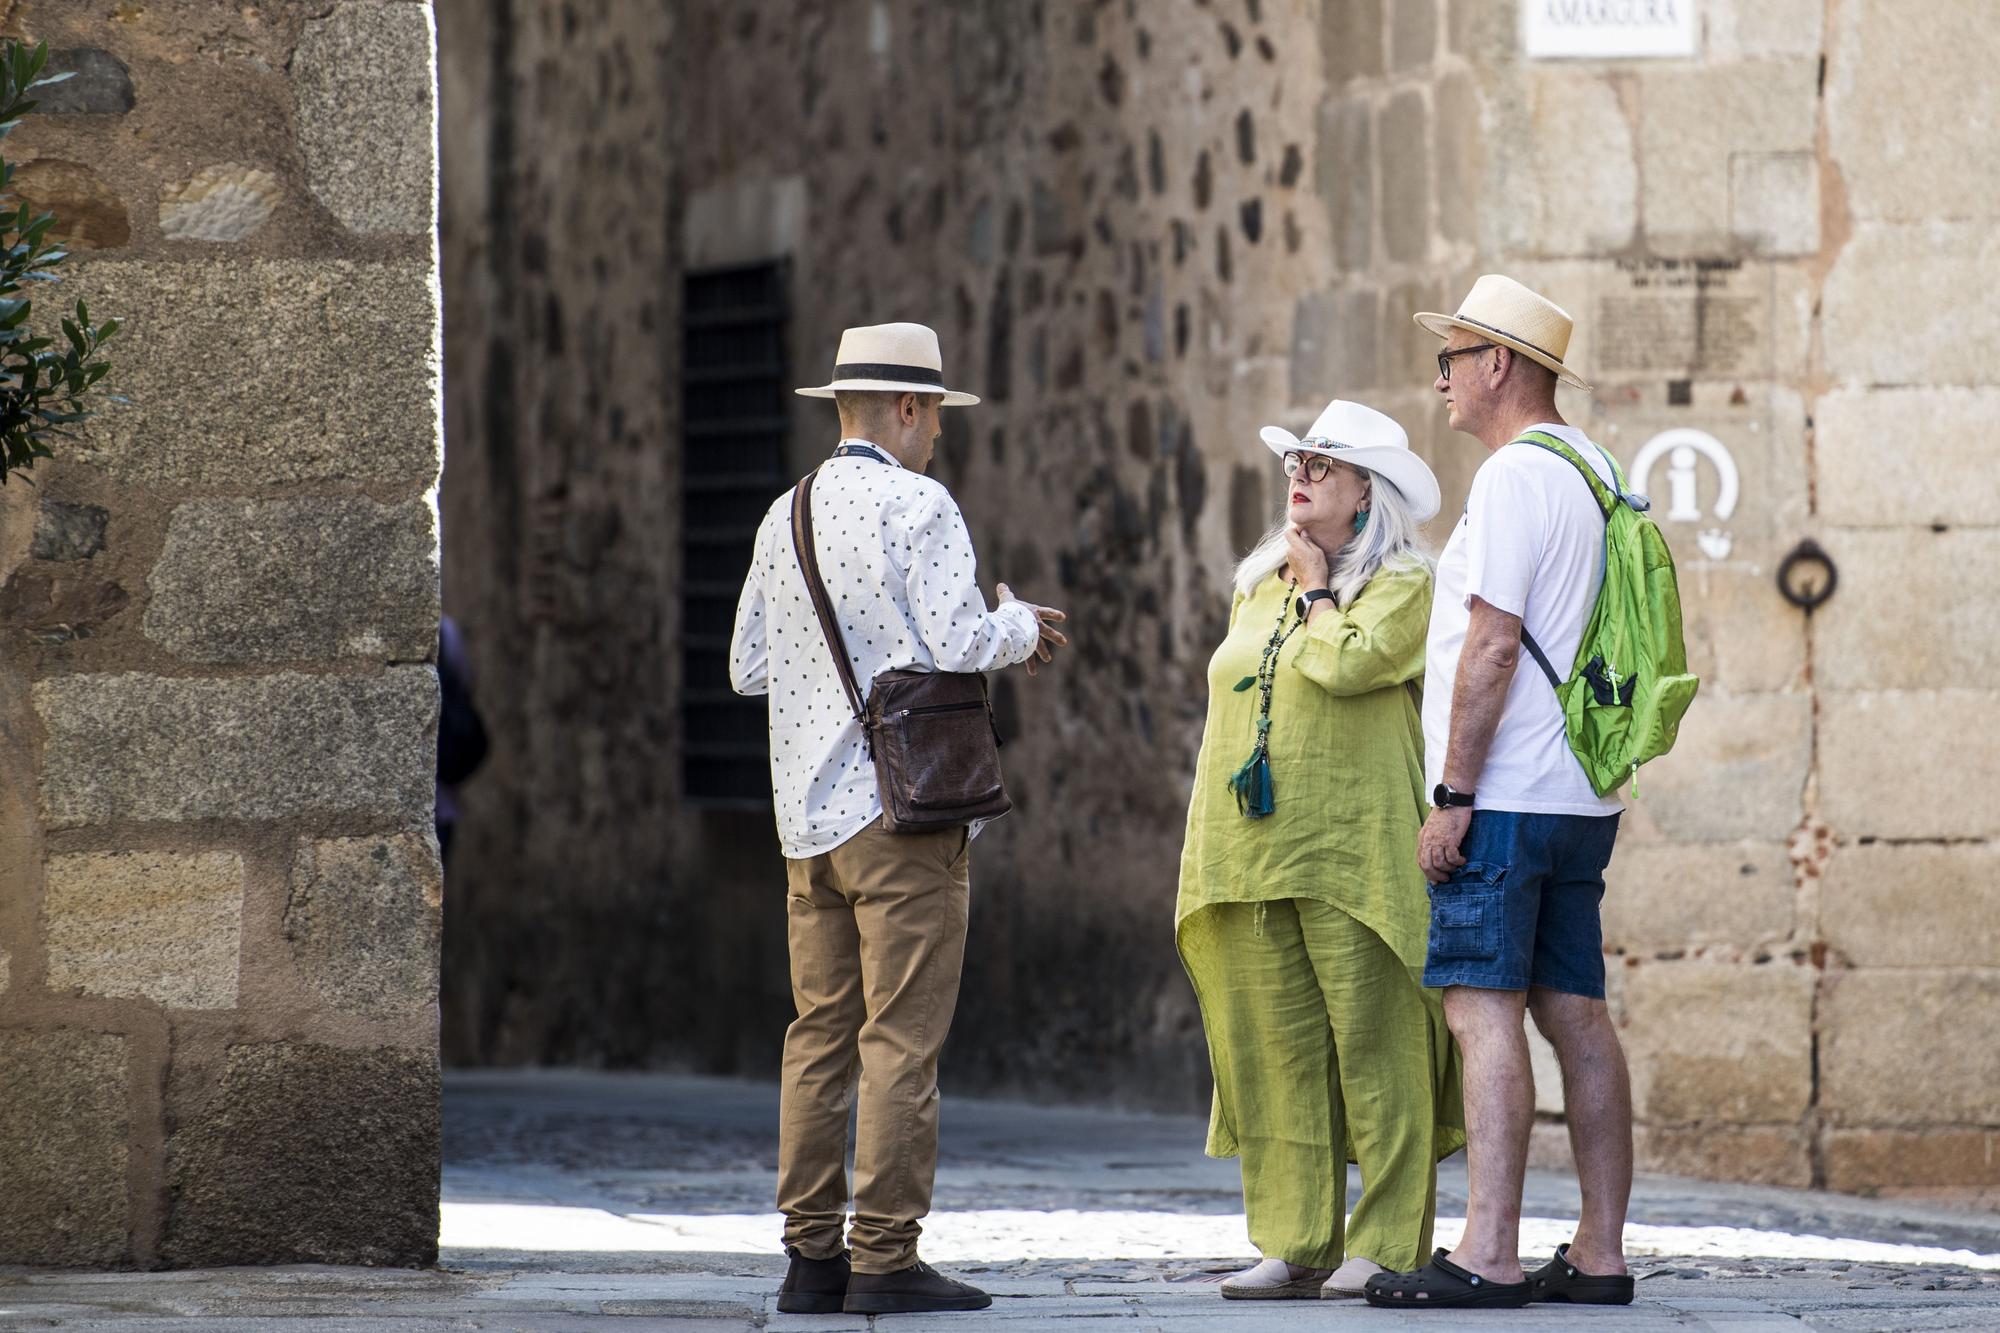 Galería de fotos |  Así disfrutan los turistas de la belleza de Cáceres